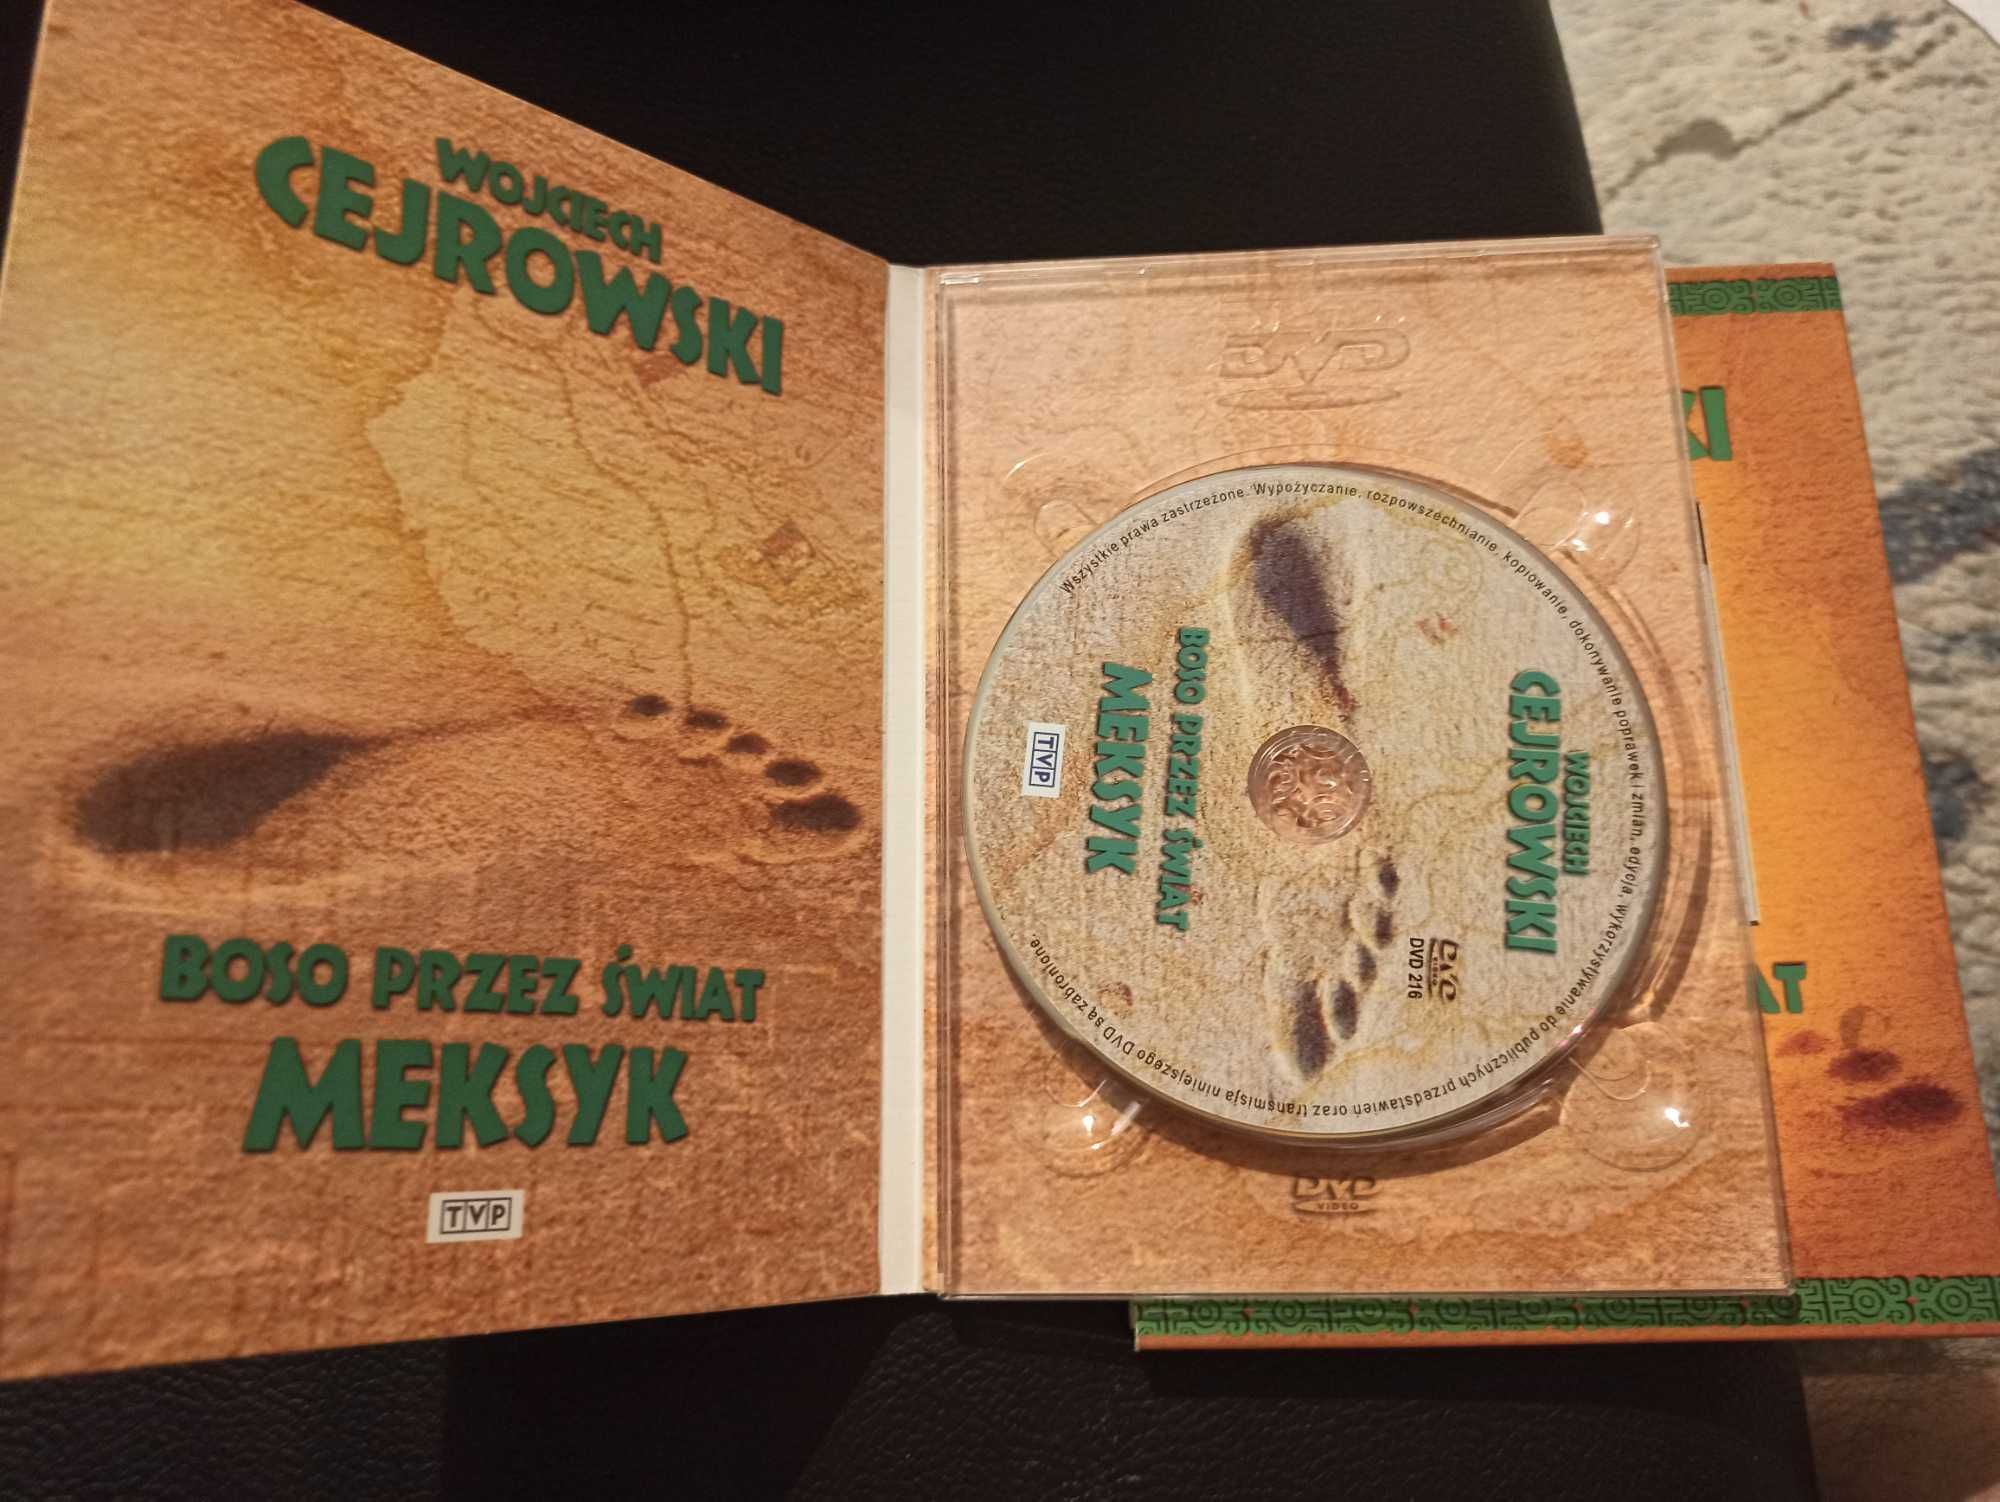 Cejrowski 2 płyty DVD Boso przez swiat Meksyk i Madagaskar